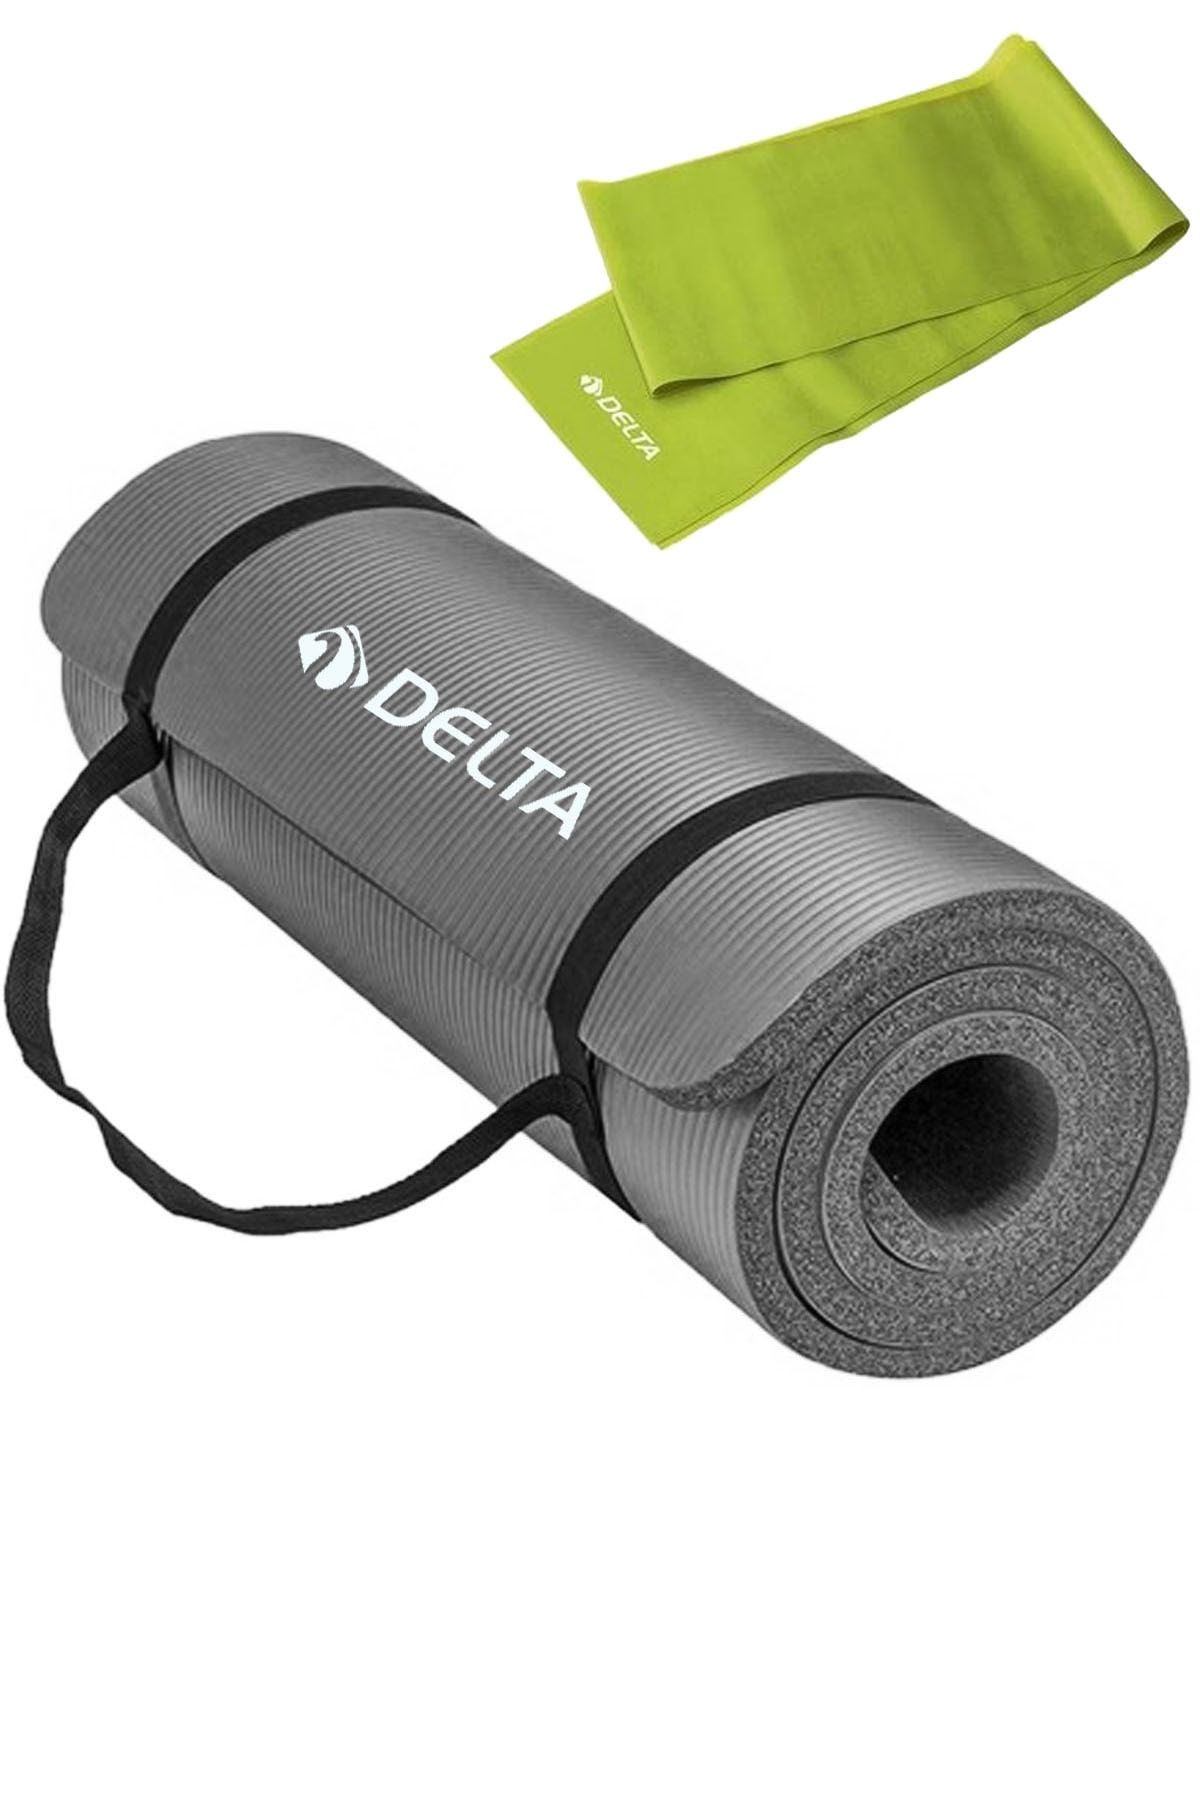 Delta 1.5 Cm Taşıma Askılı Pilates Minderi Egzersiz Yoga Matı 15 Mm, 120x15 Cm Plates Bandı Lastiği